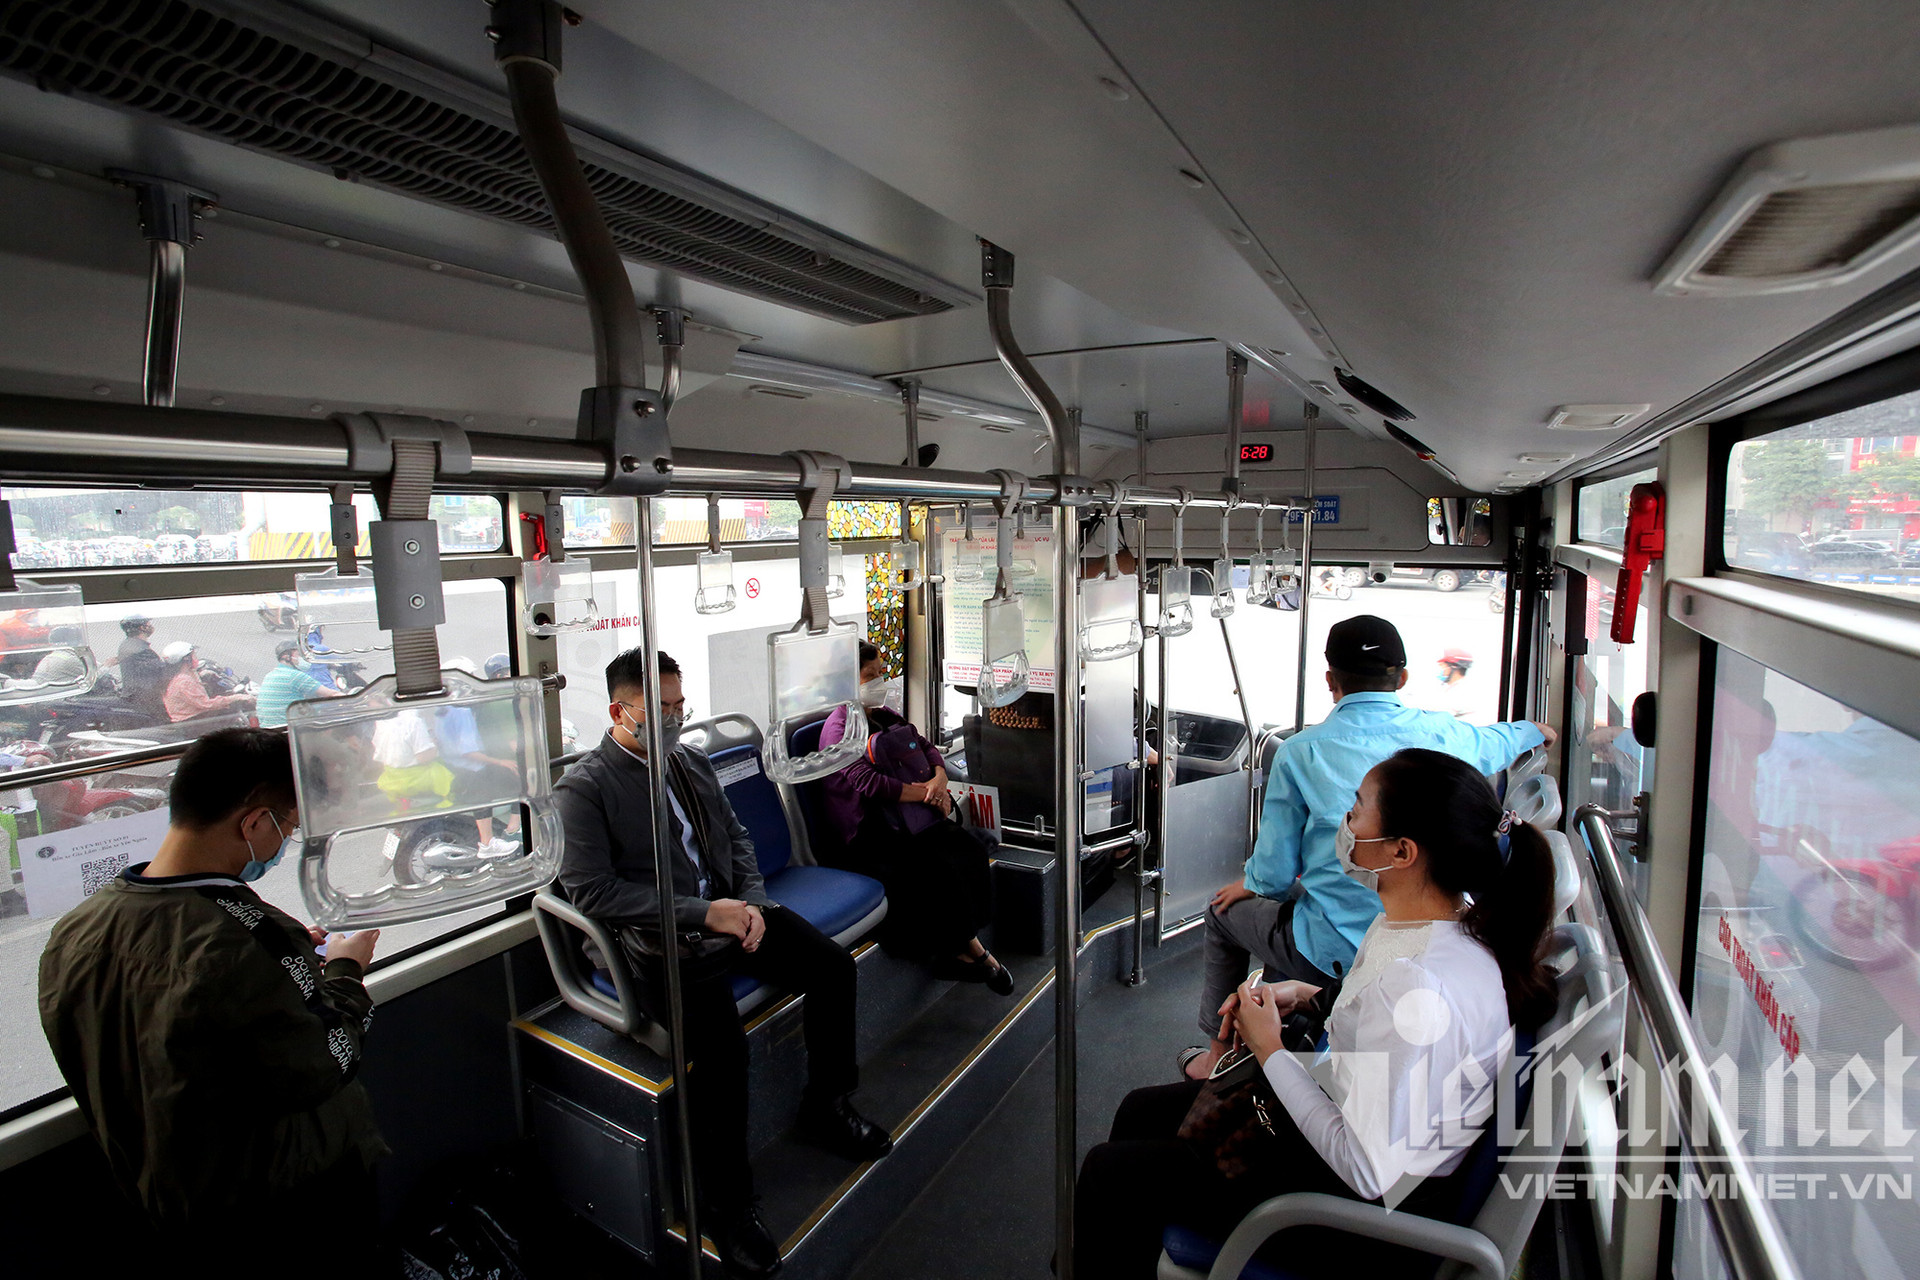 Người đi xe buýt ở Hà Nội tăng dần, đủ 50% là không nhận khách